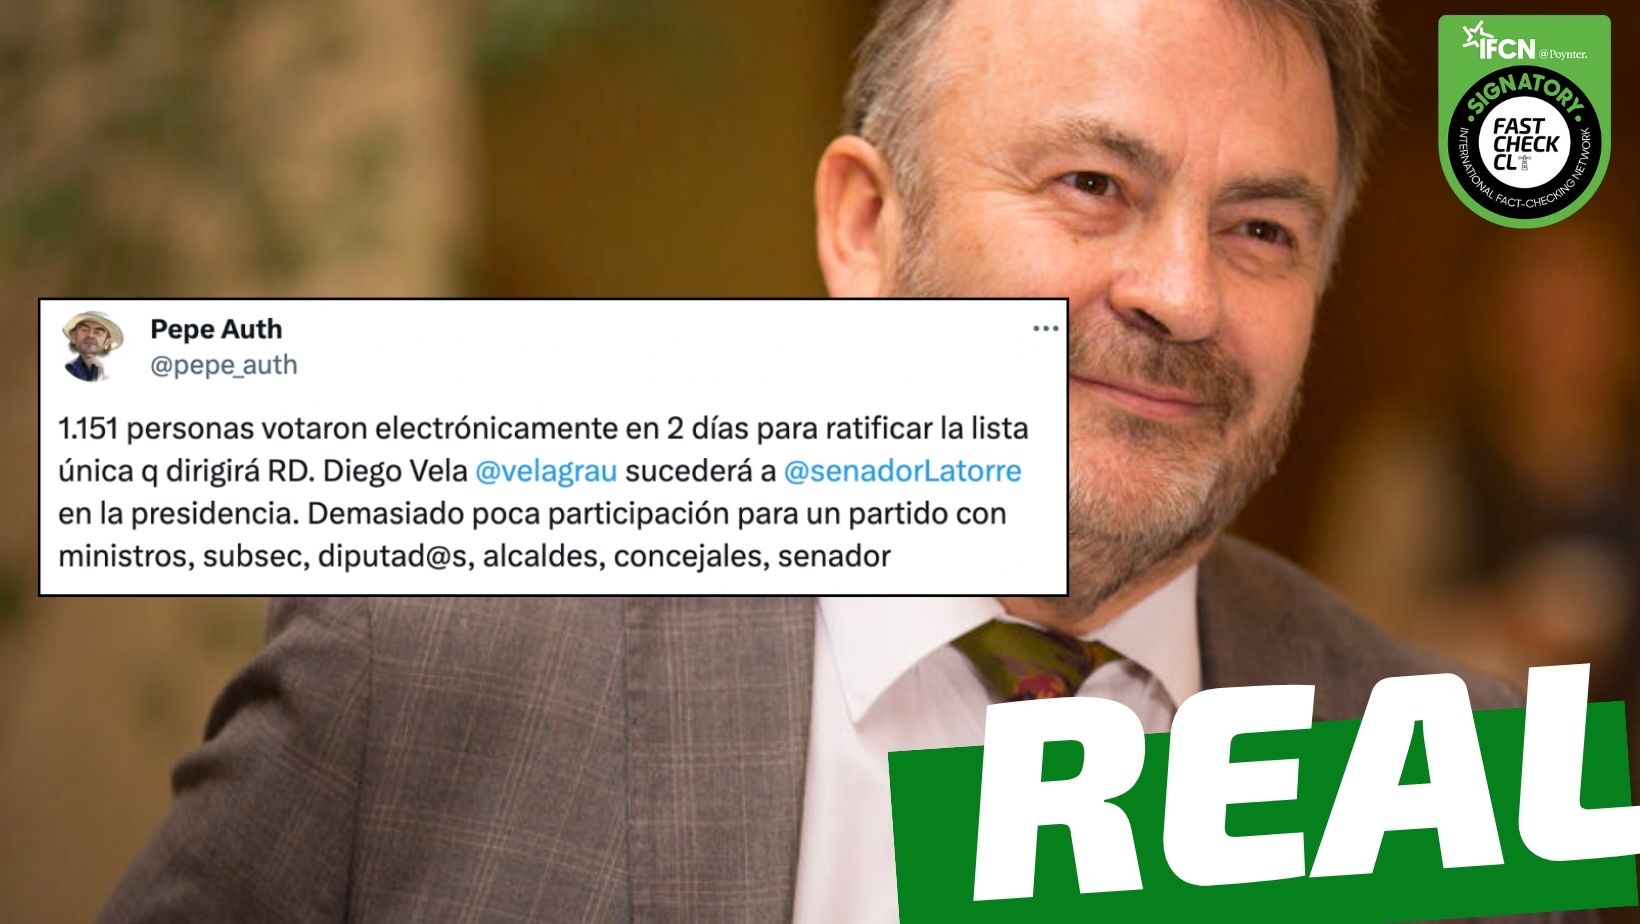 You are currently viewing “Solo 1.151 personas votaron para ratificar la lista que dirigirá Revolución Democrática”: #Real